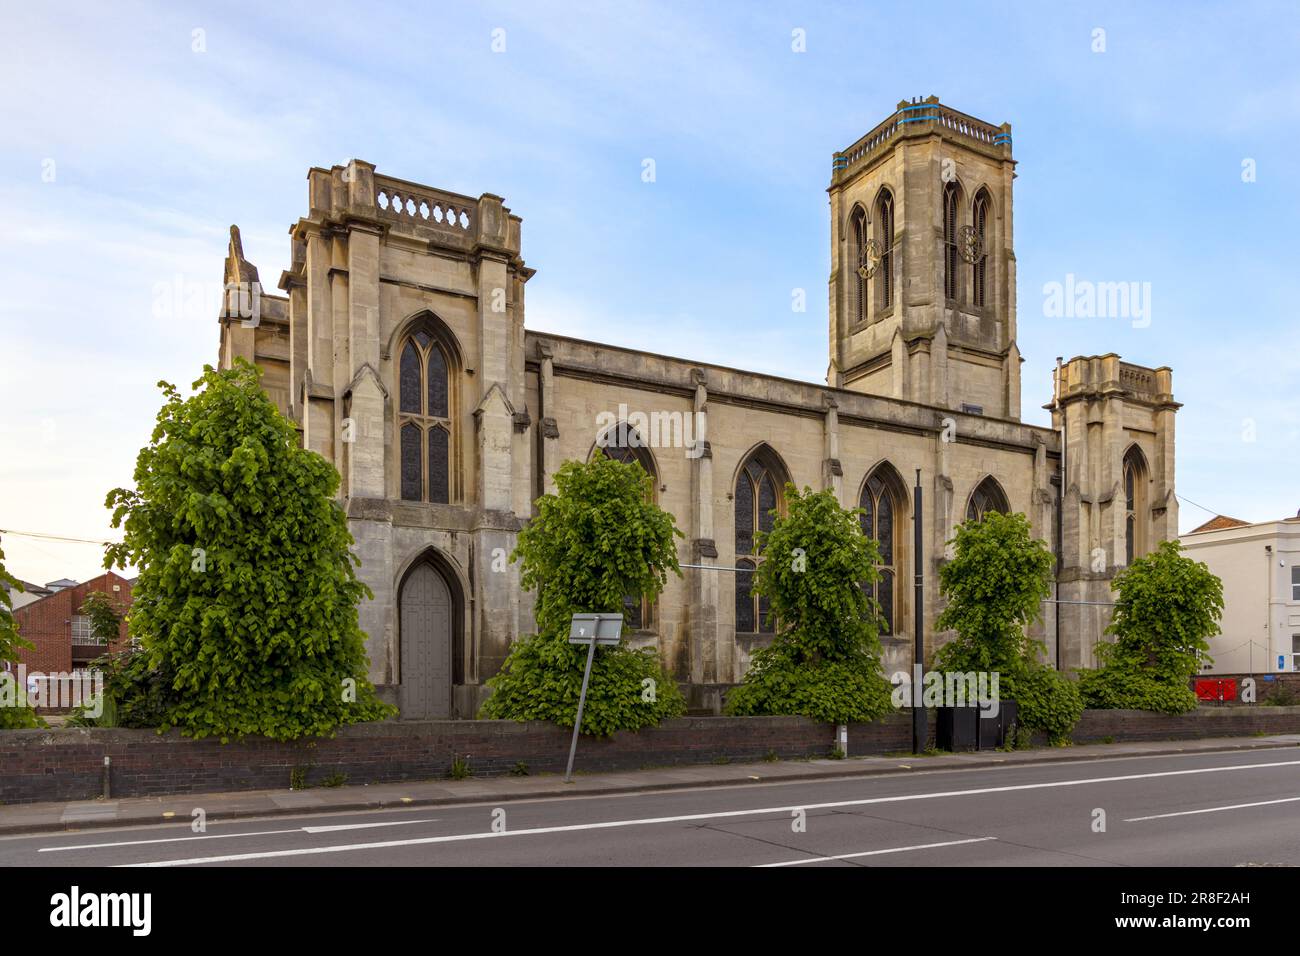 L'église Trinity Cheltenham, une église anglicane évangélique et charismatique de Cheltenham, Gloucestershire, Angleterre, Royaume-Uni. Banque D'Images